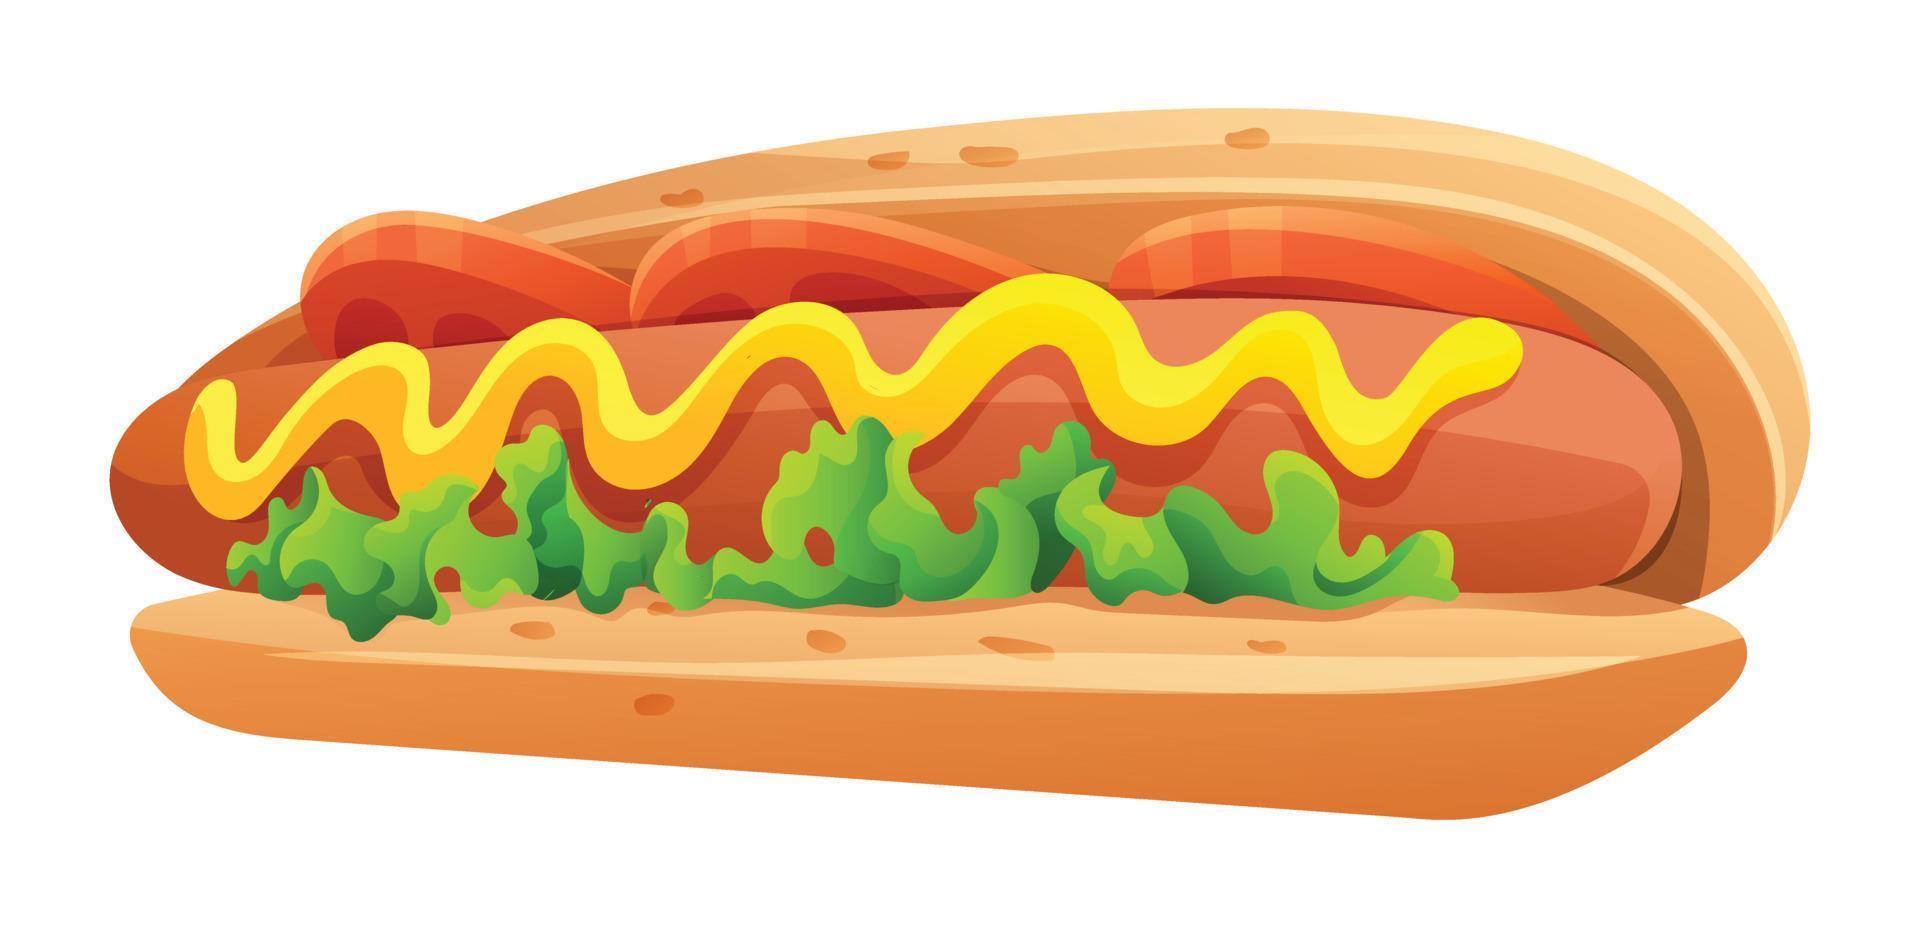 Hot dog vector illustration isolated on white background